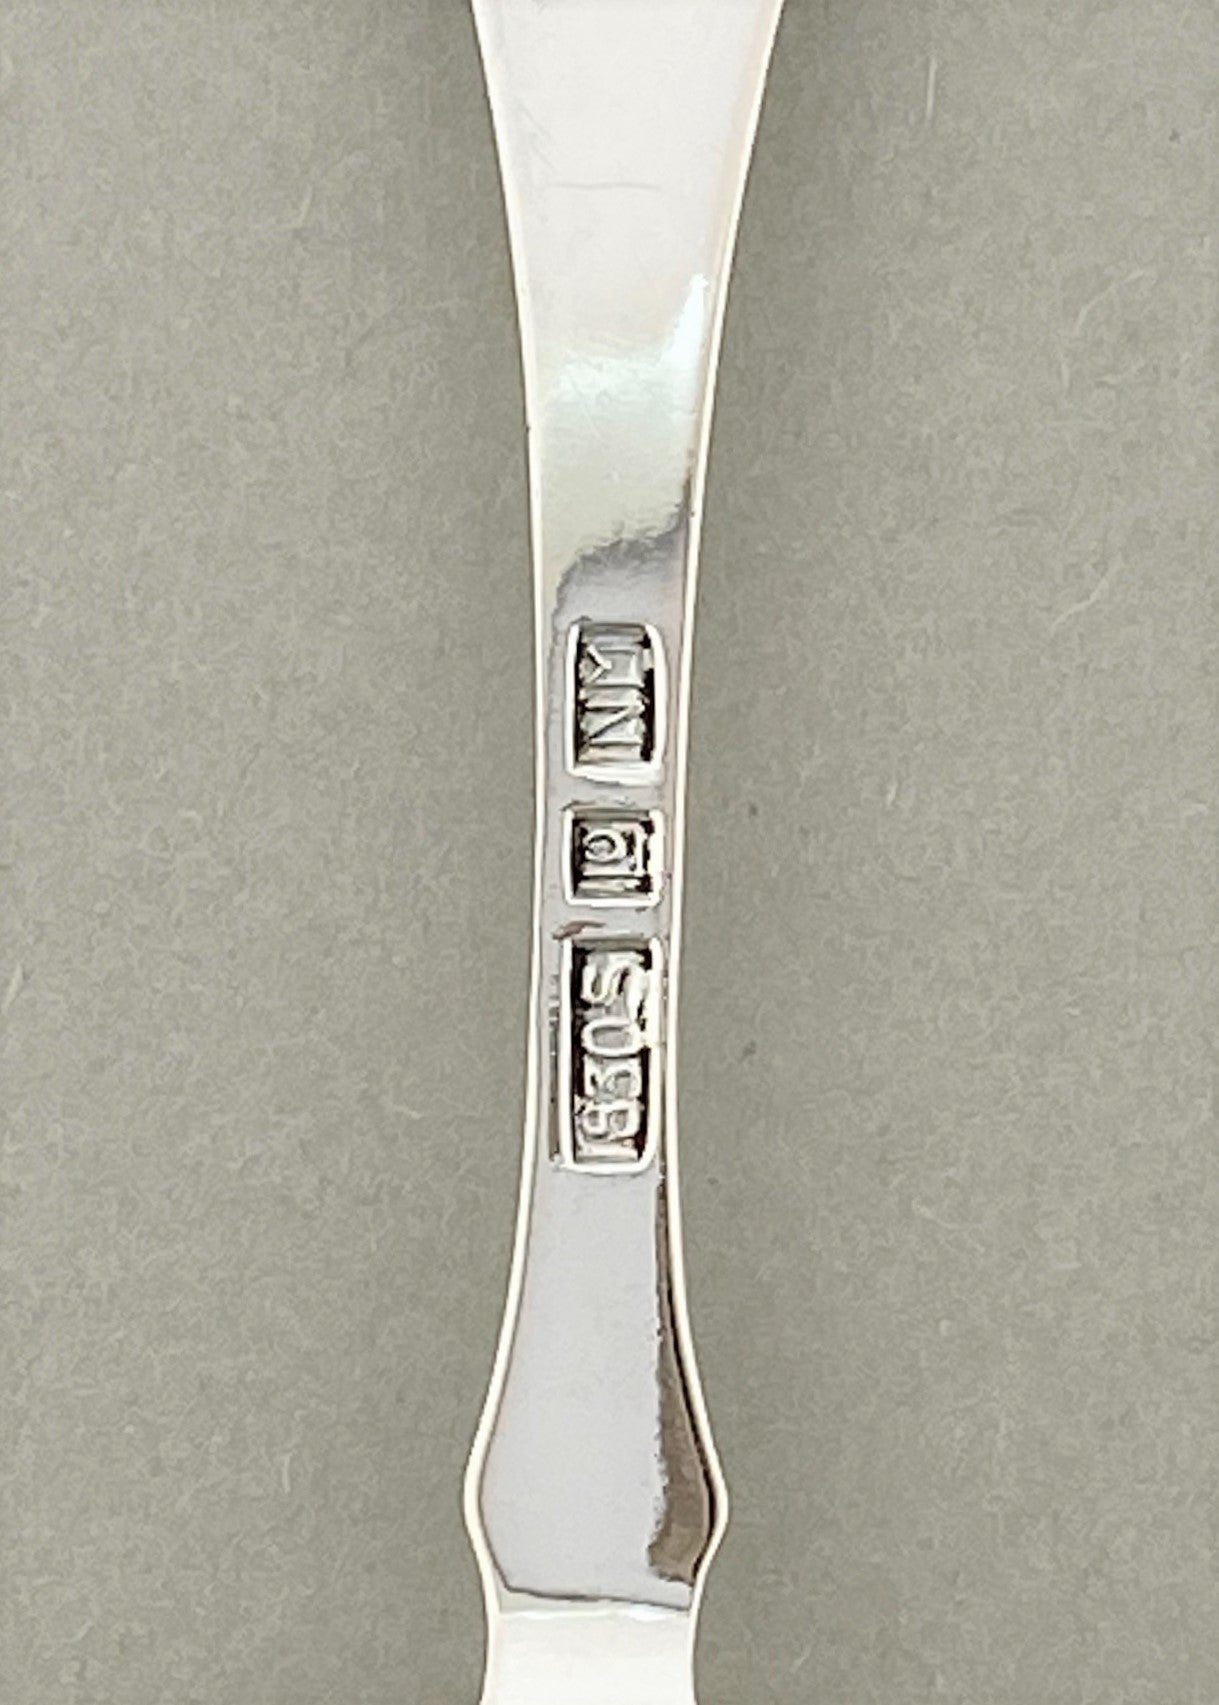 Vintage Laila lemon fork